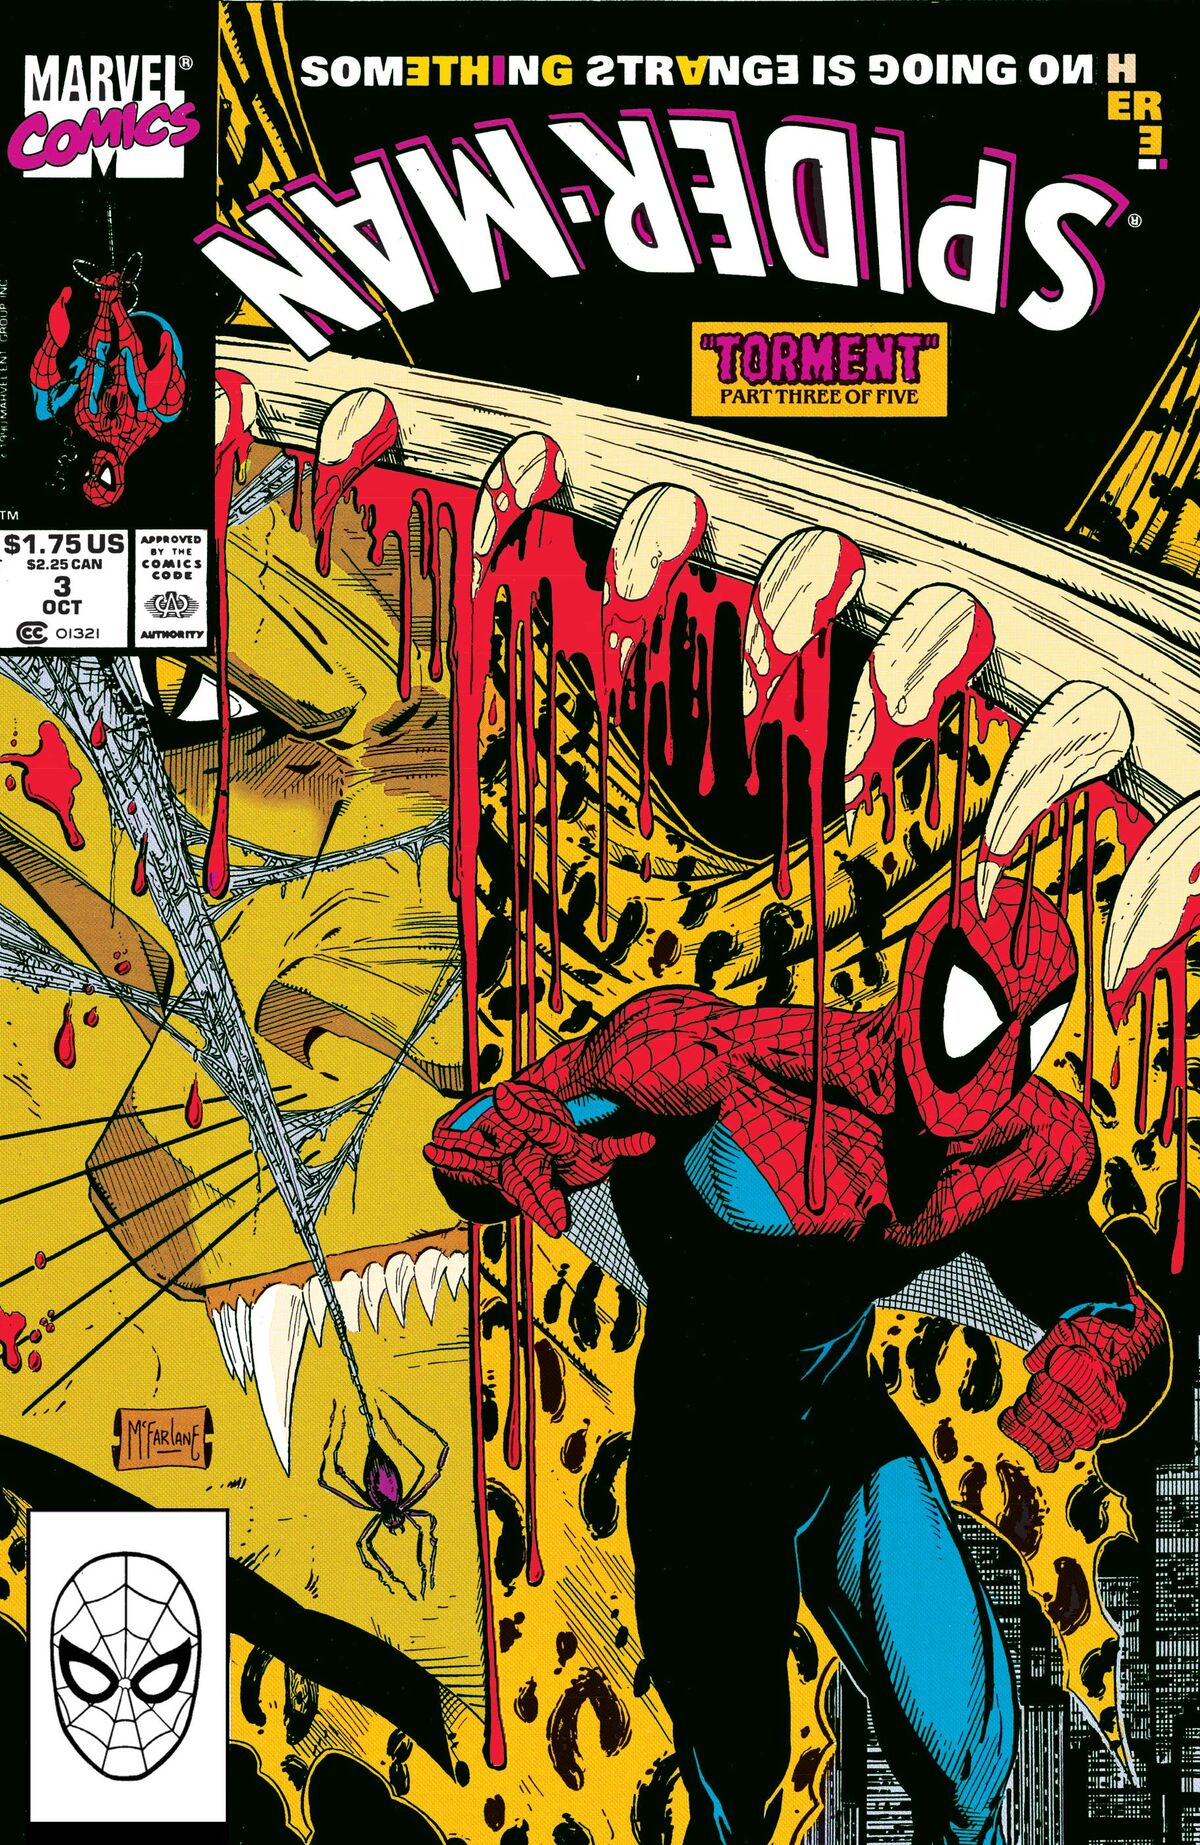 Spider-Man Vol 1 3 | Marvel Database | Fandom